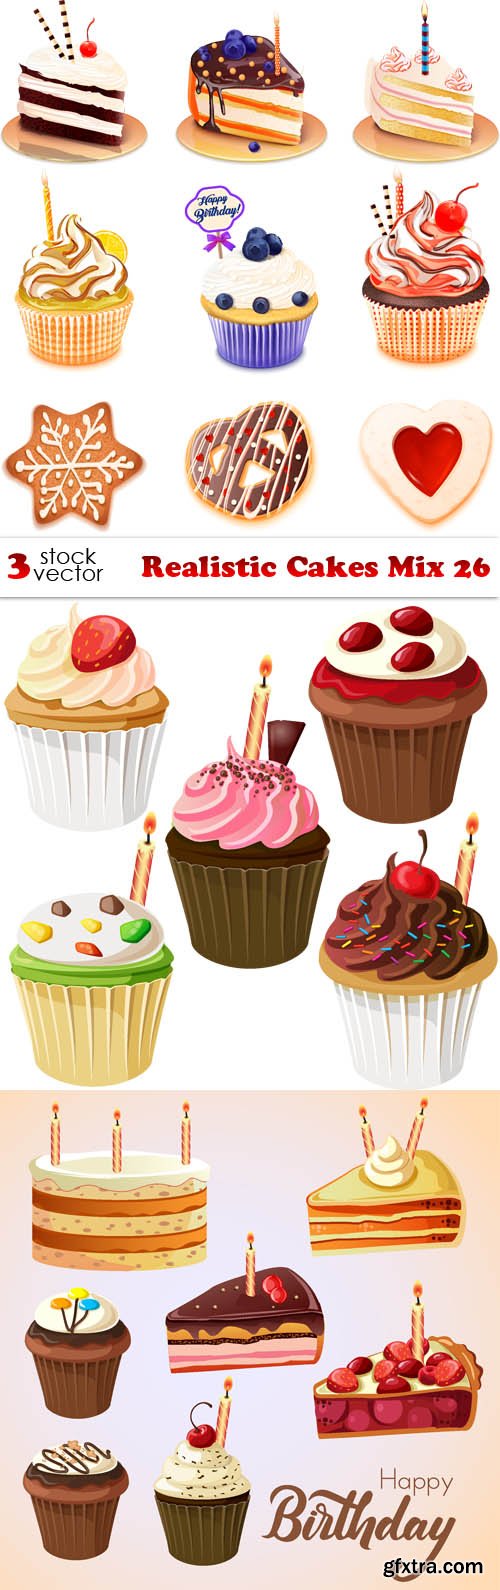 Vectors - Realistic Cakes Mix 26